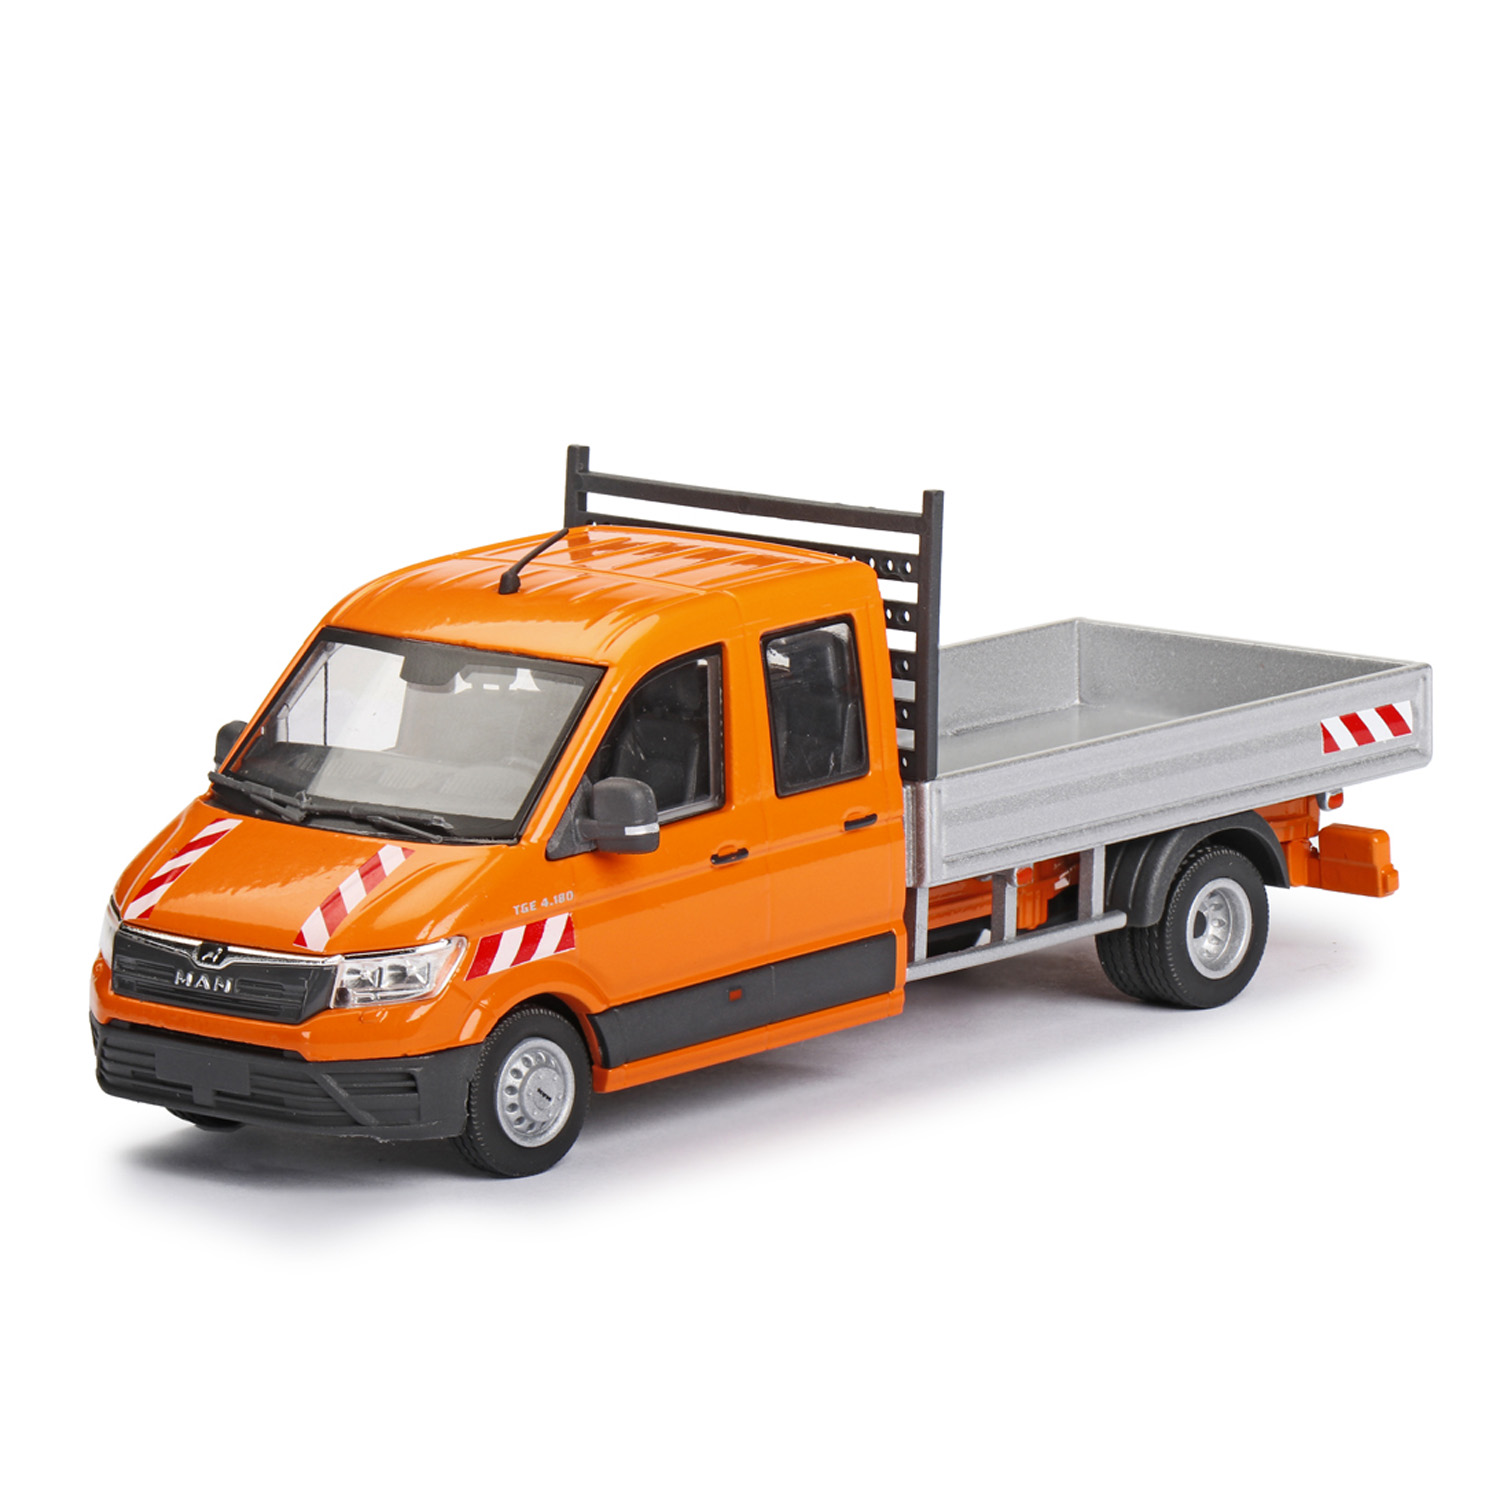 spiel + modellkist'l Shop | MAN TGE 4.180 Doka Transporter Pritsche, orange  | Online kaufen